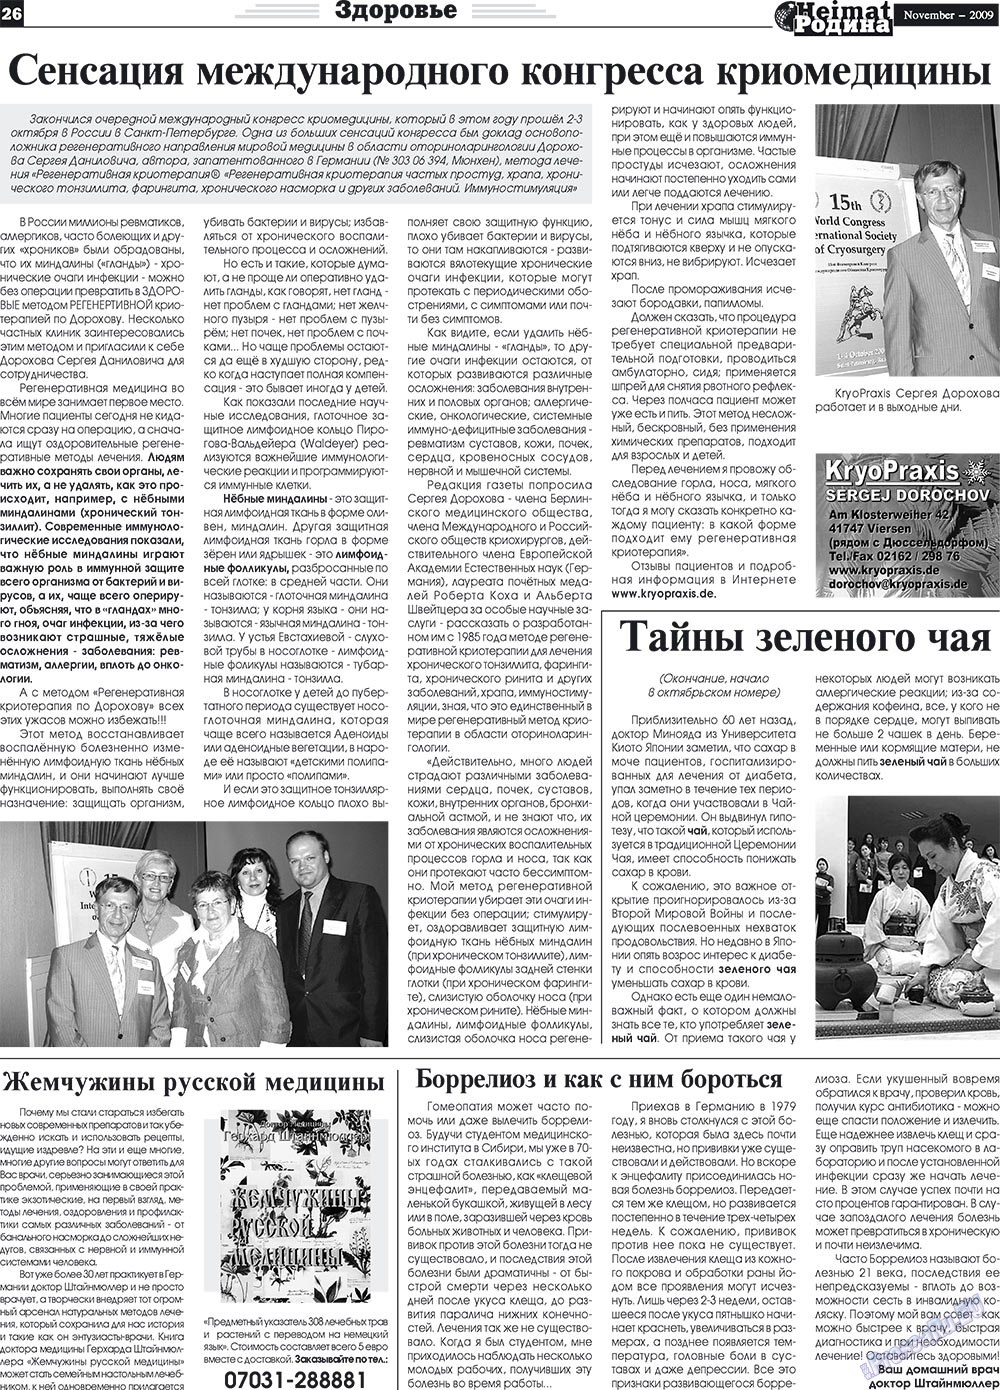 Heimat-Родина (газета). 2009 год, номер 11, стр. 26